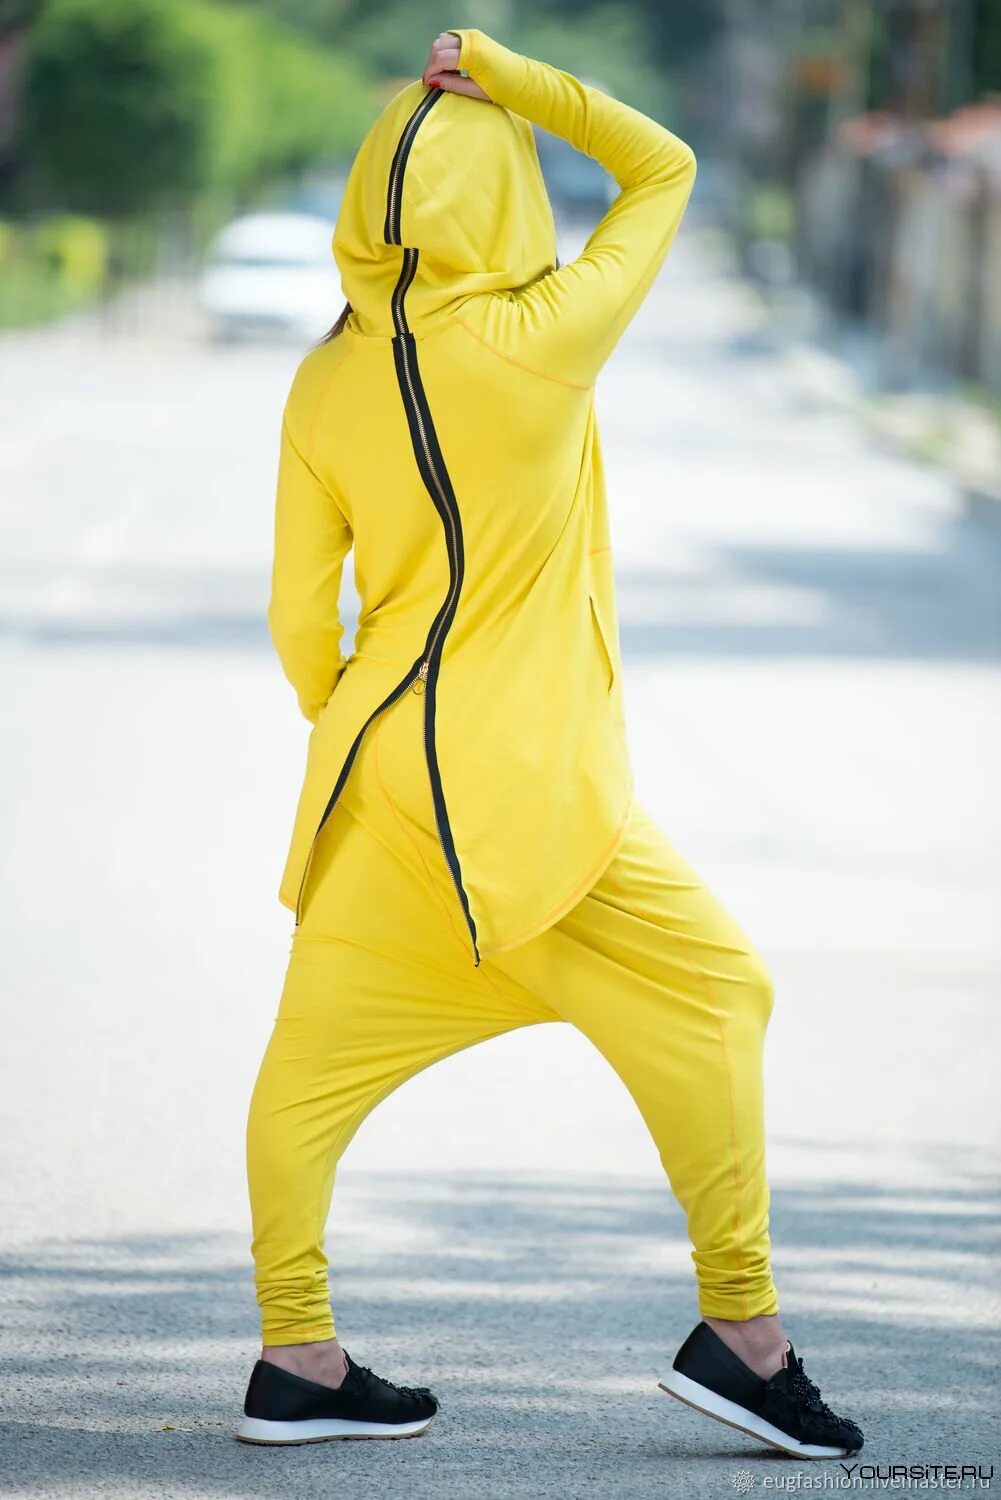 Спортивные костюмы s. Спортивный костюм адидас женский желтый. Желтый костюм адидас женский. Необычные спортивные костюмы. Спортивный костюм с капюшоном.